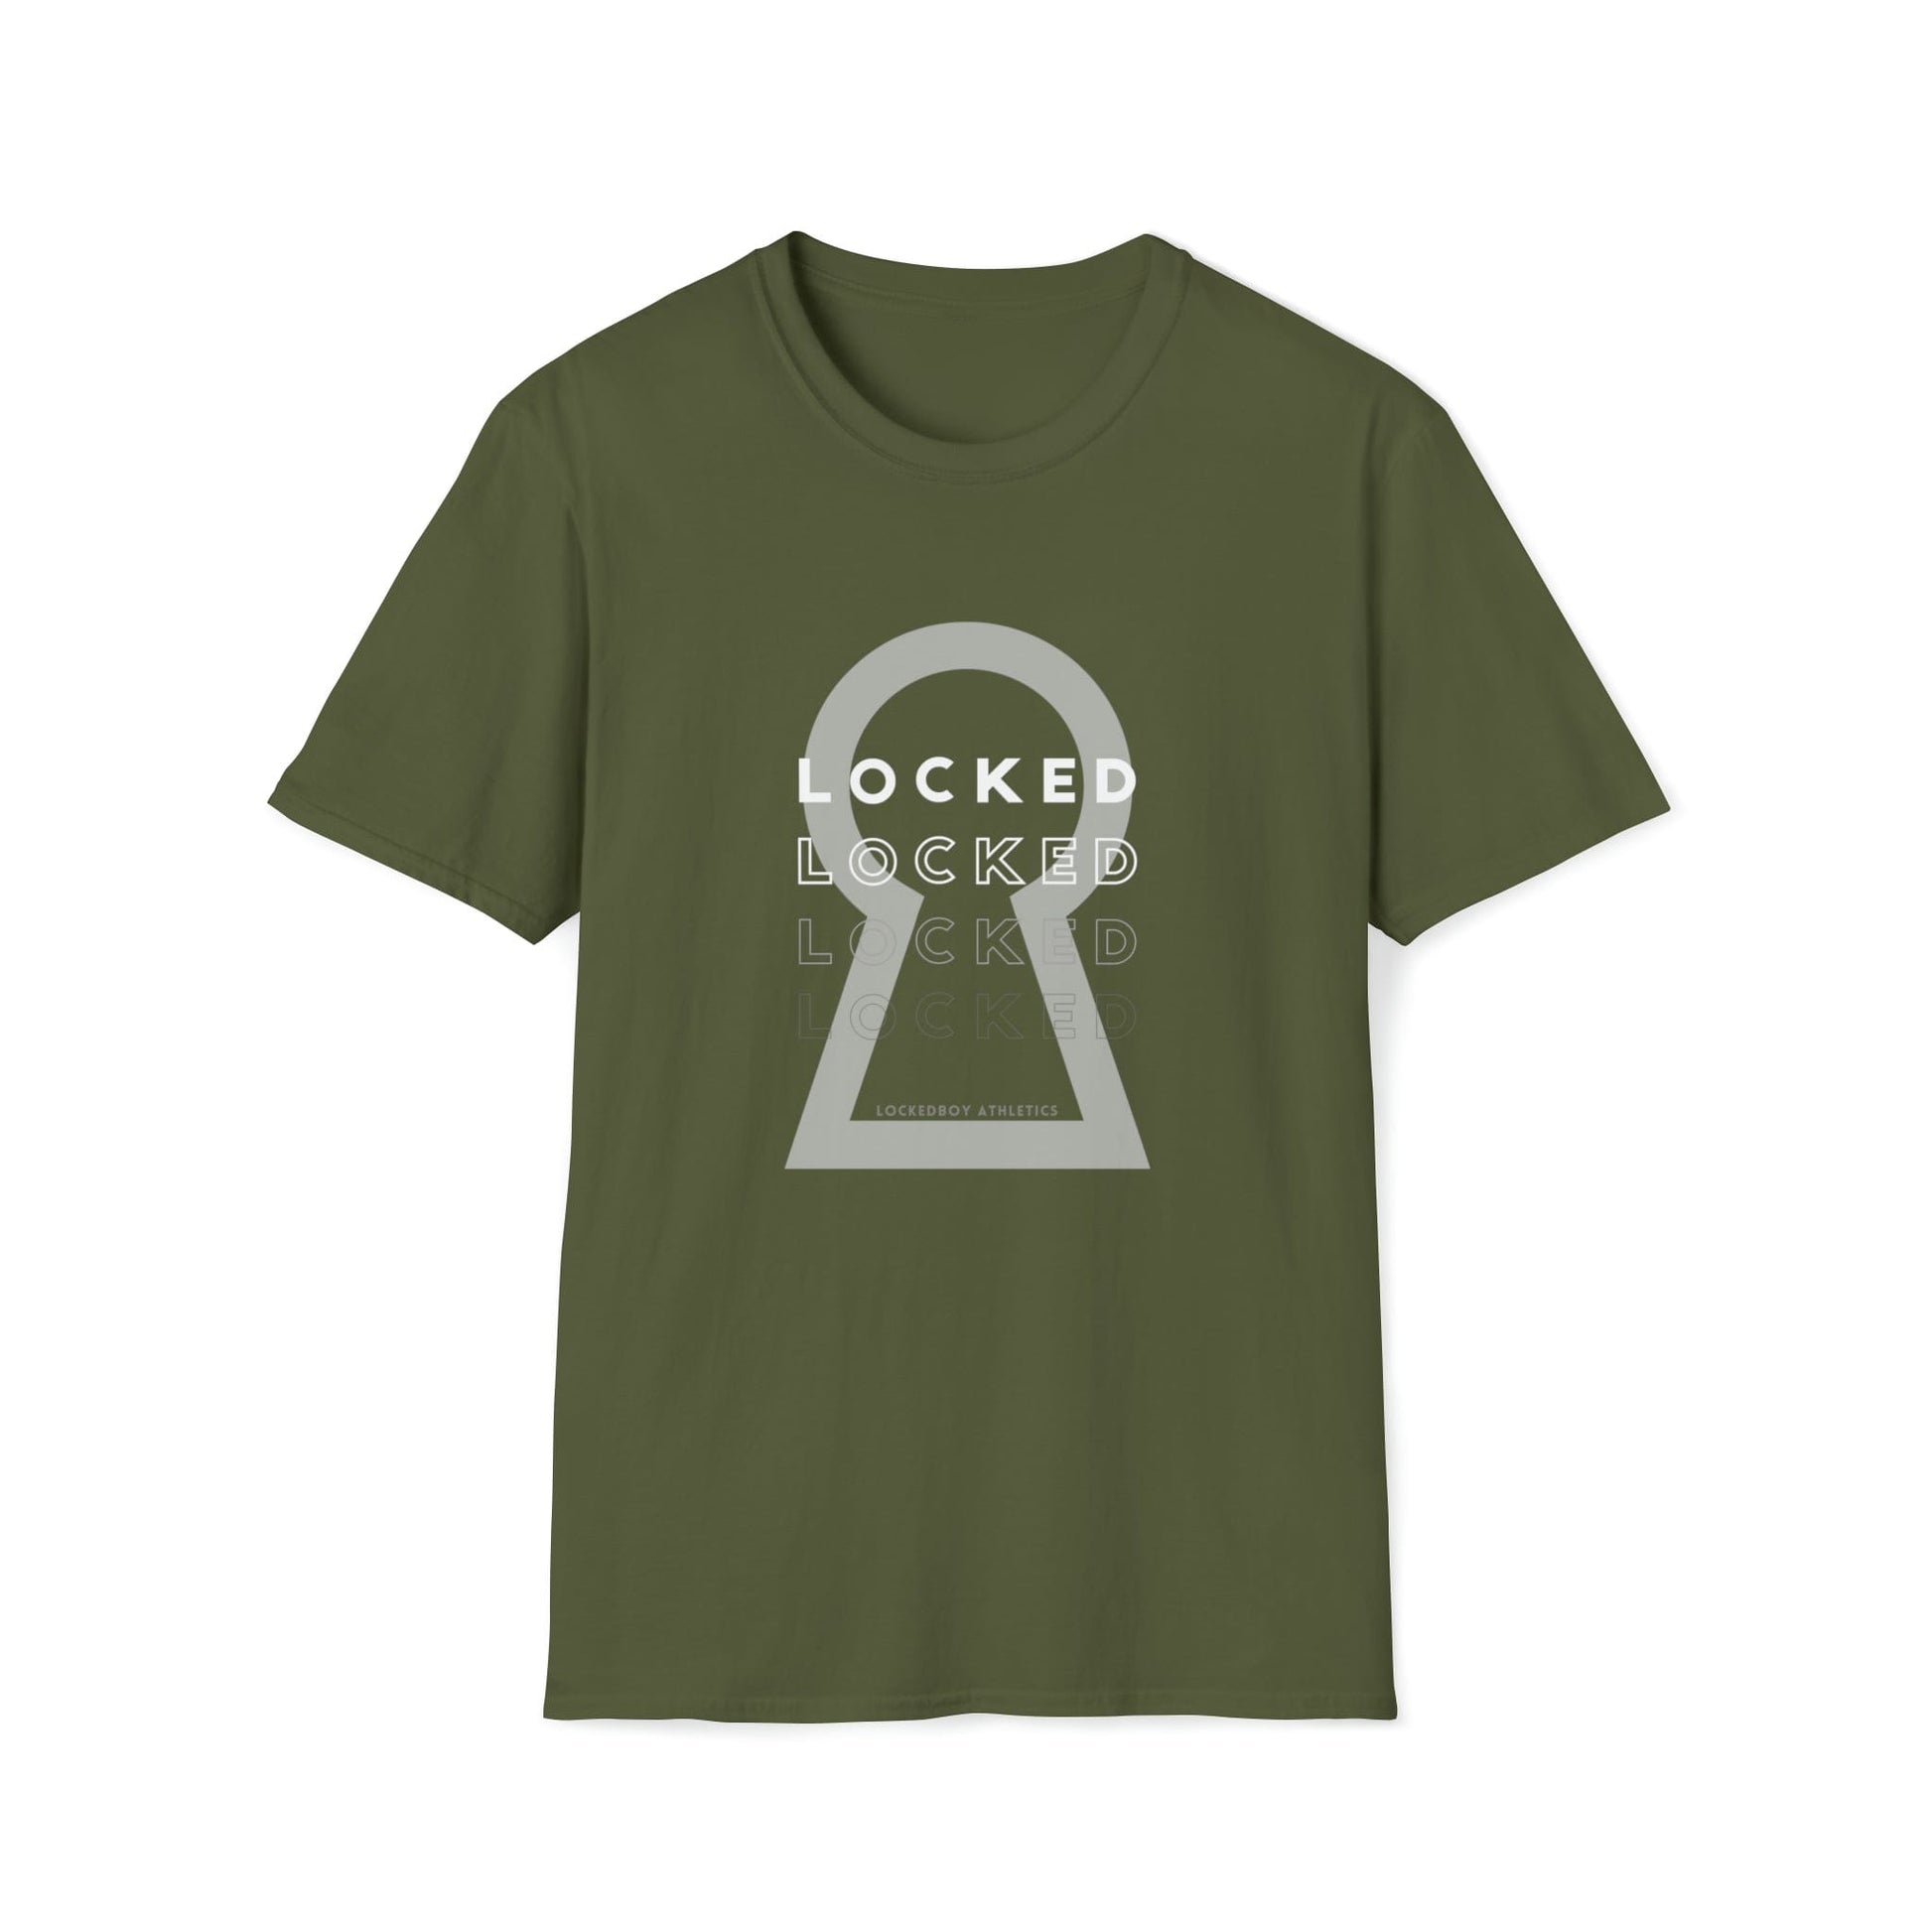 T-Shirt Military Green / S Lockedboy KeyHOLE Echo - Lockedboy Athletics Chastity Tshirt LEATHERDADDY BATOR